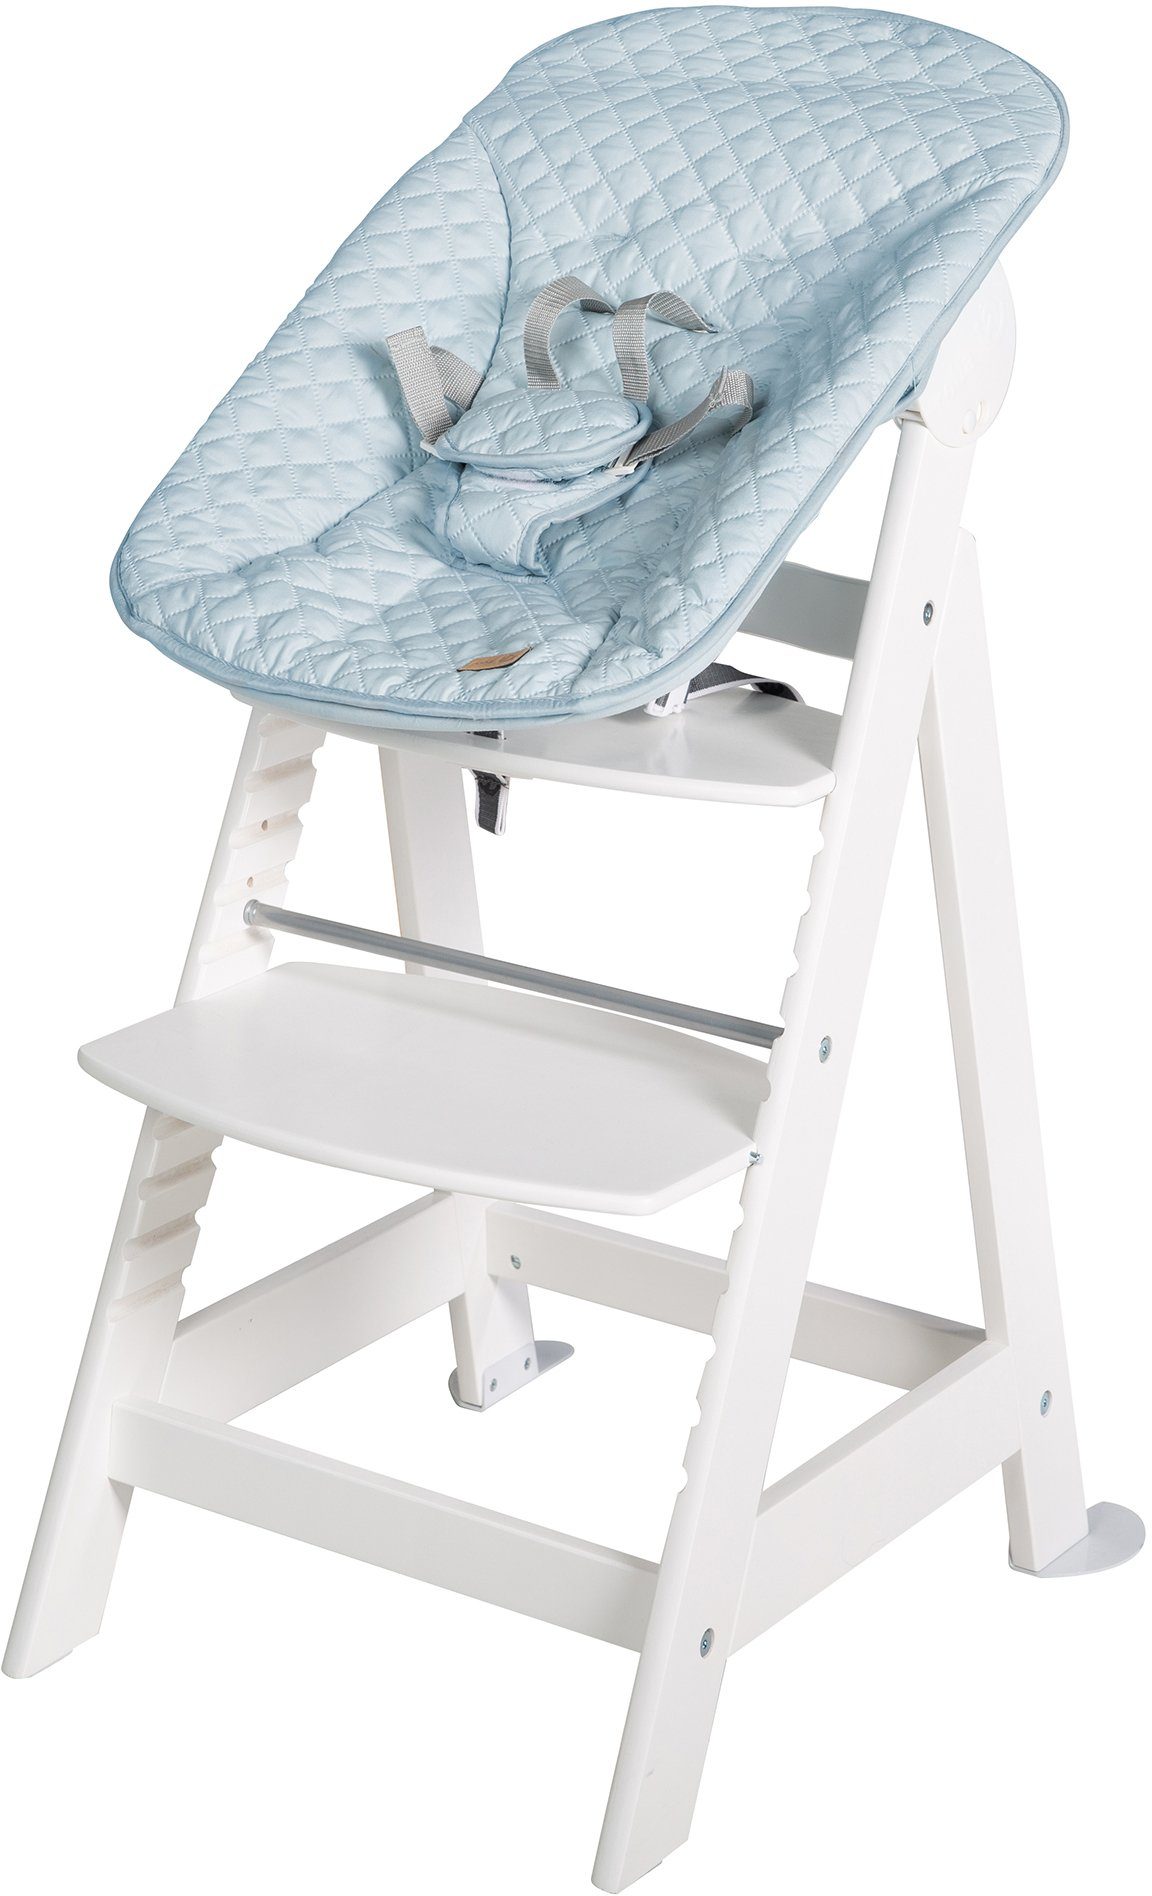 Neugeborenen-Aufsatz 2-in-1 mit roba® hellblau/sky/weiß Set Born Up, Hochstuhl Treppenhochstuhl Style,